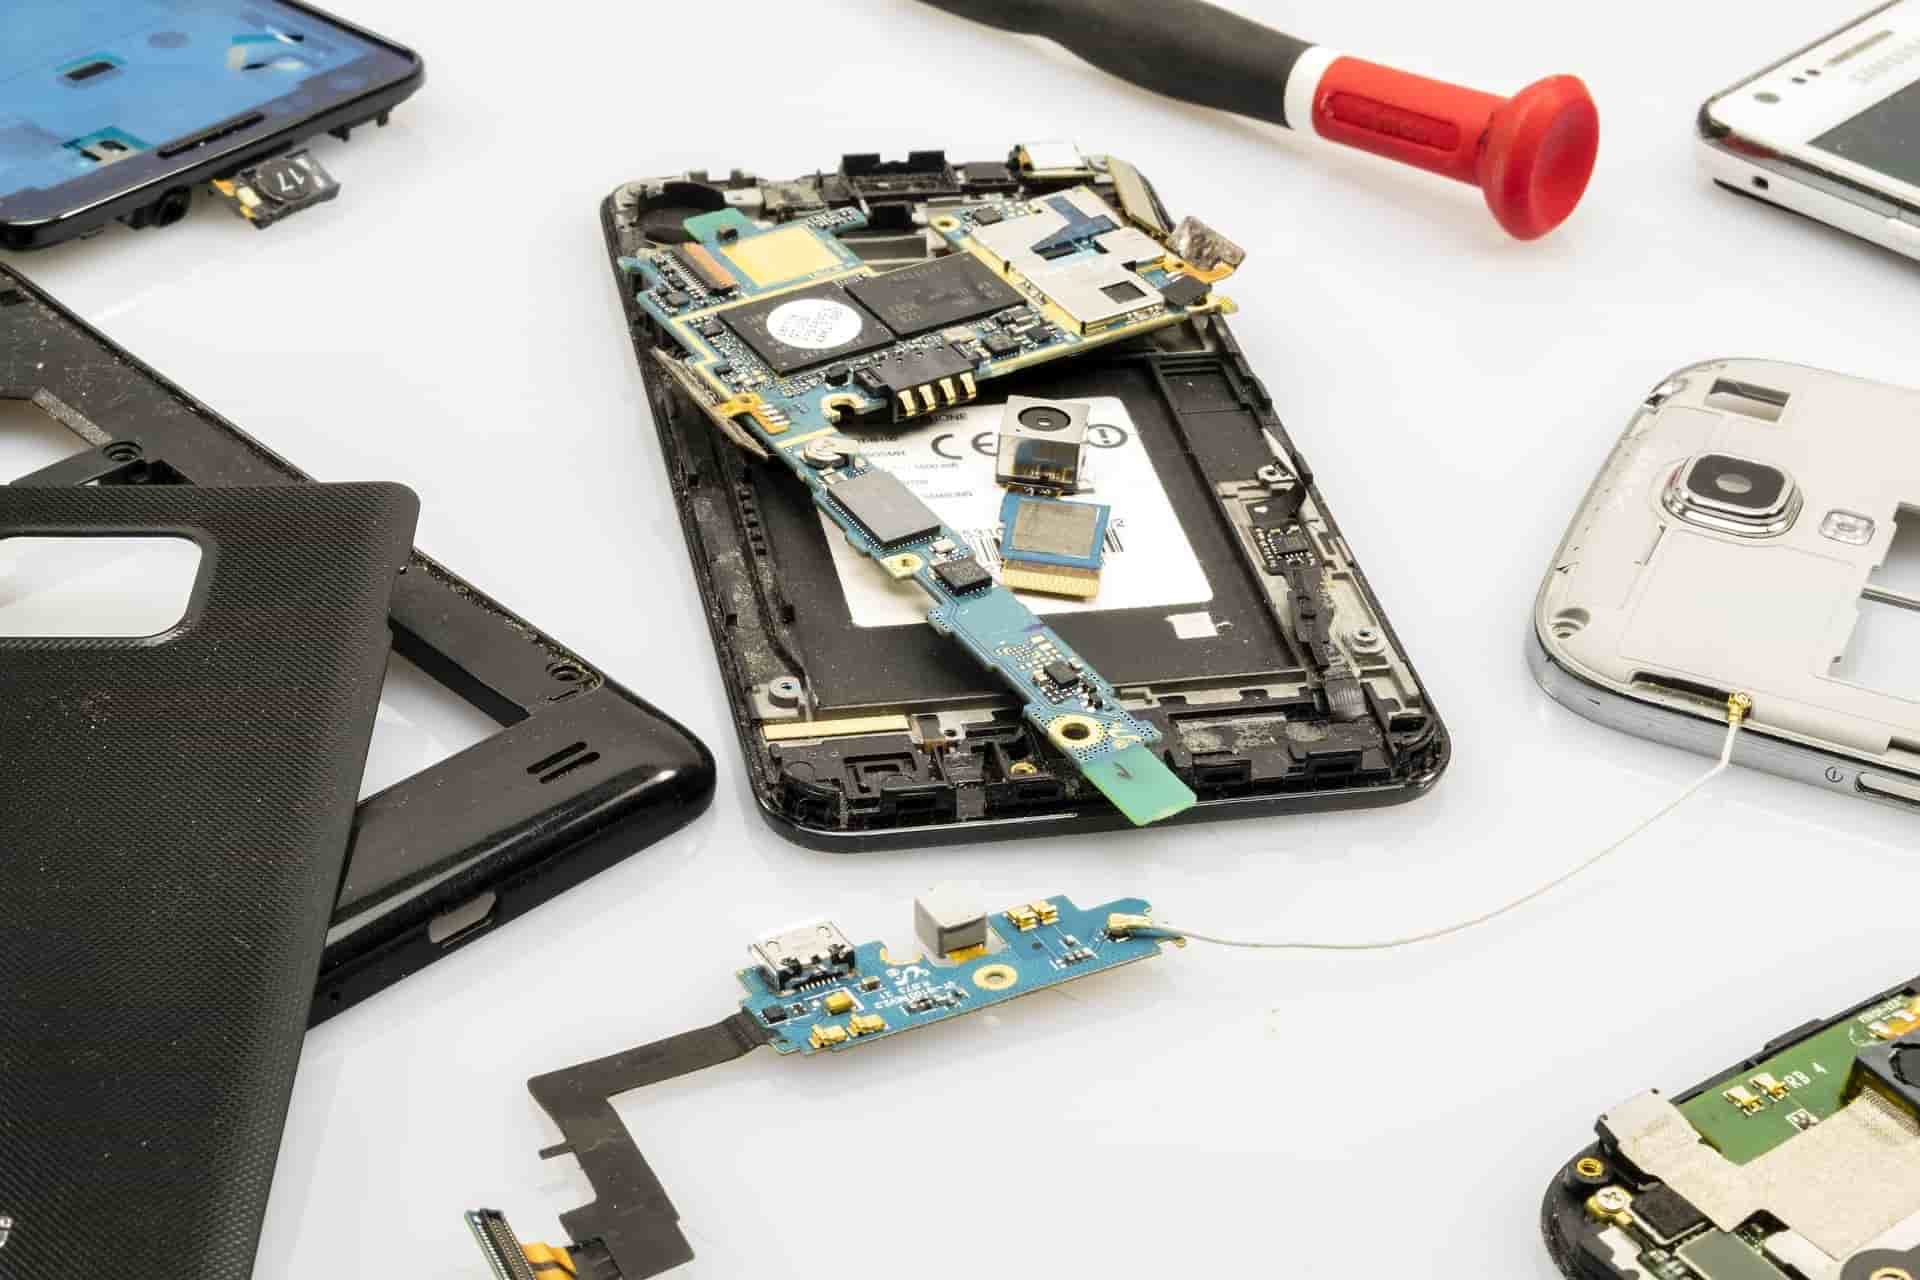 mantenimiento y reparacion de celulares